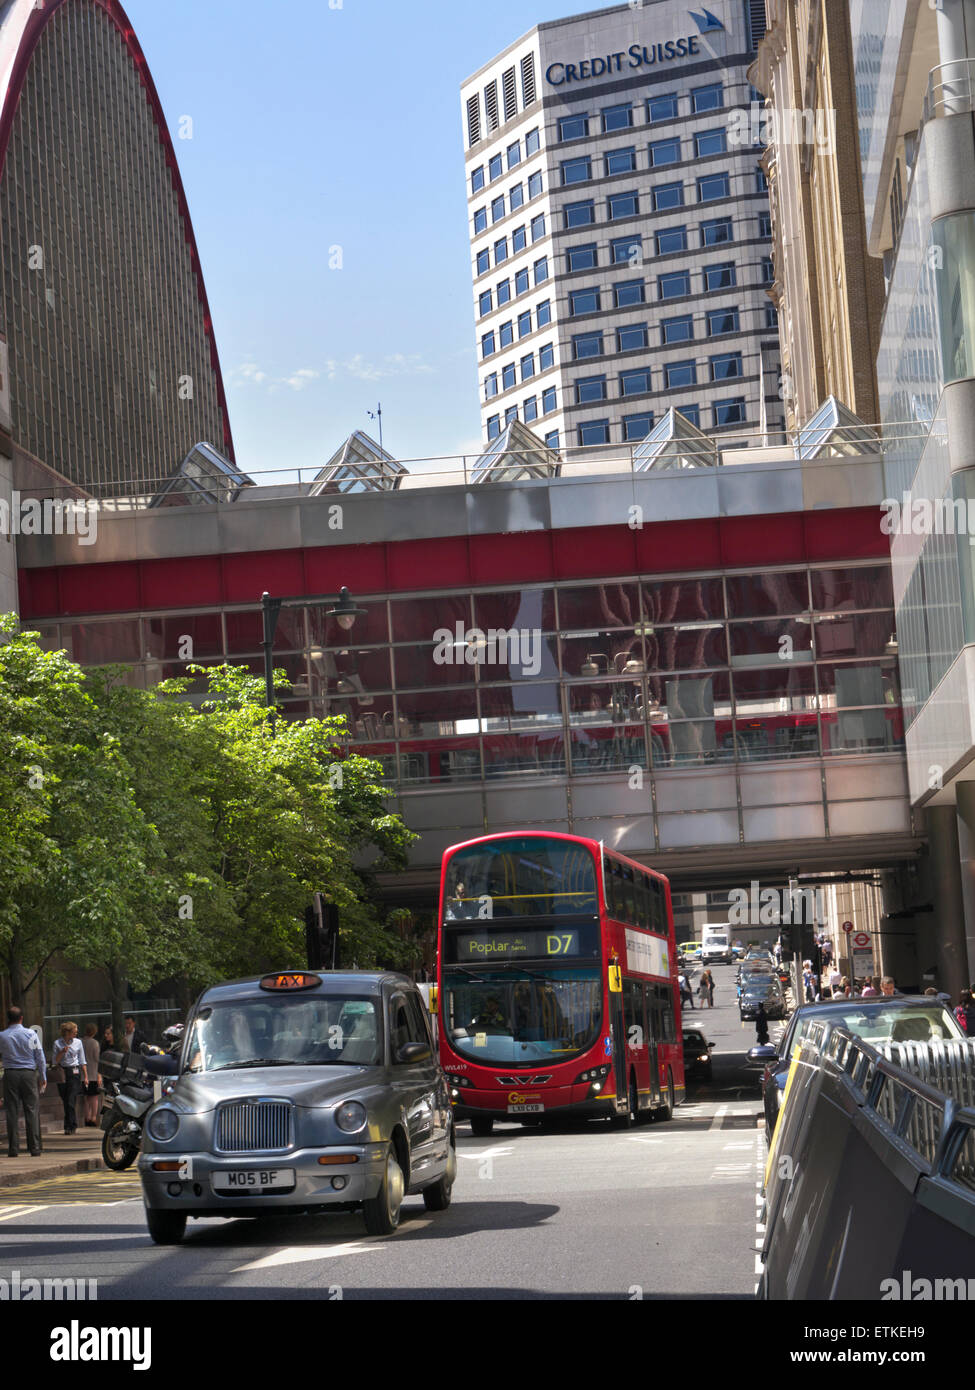 LONDON TAXI MIETEN traditionellen Londoner Cab Taxi Mietwagen Mit roten Bus und Credit Suisse Gebäude hinter der Finanzdistrikt Canary Wharf London E14 Stockfoto